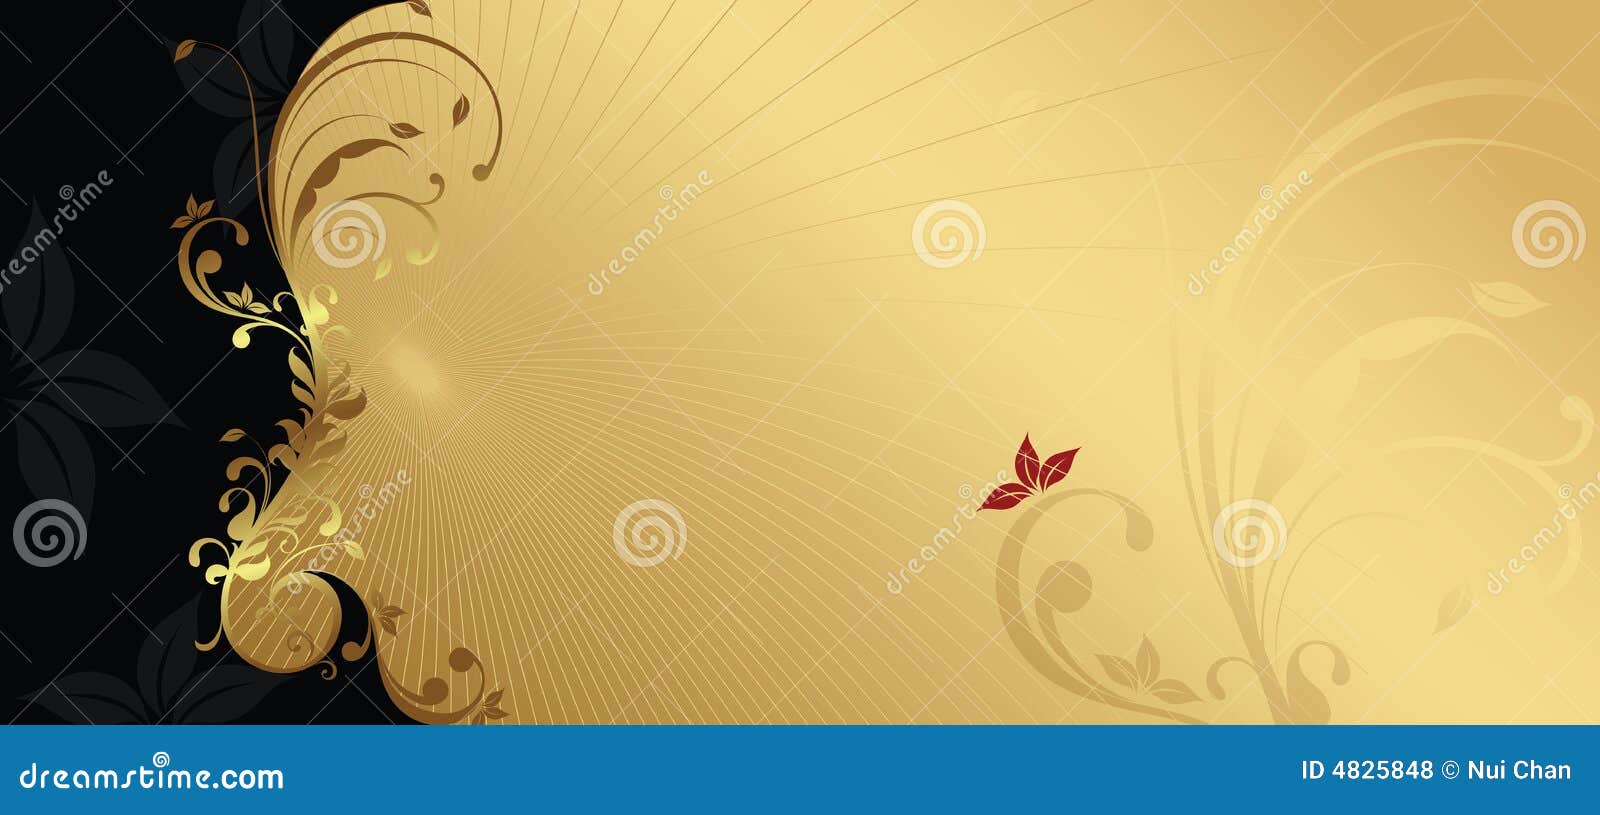 Elegant design background stock vector. Illustration of brown - 4825848